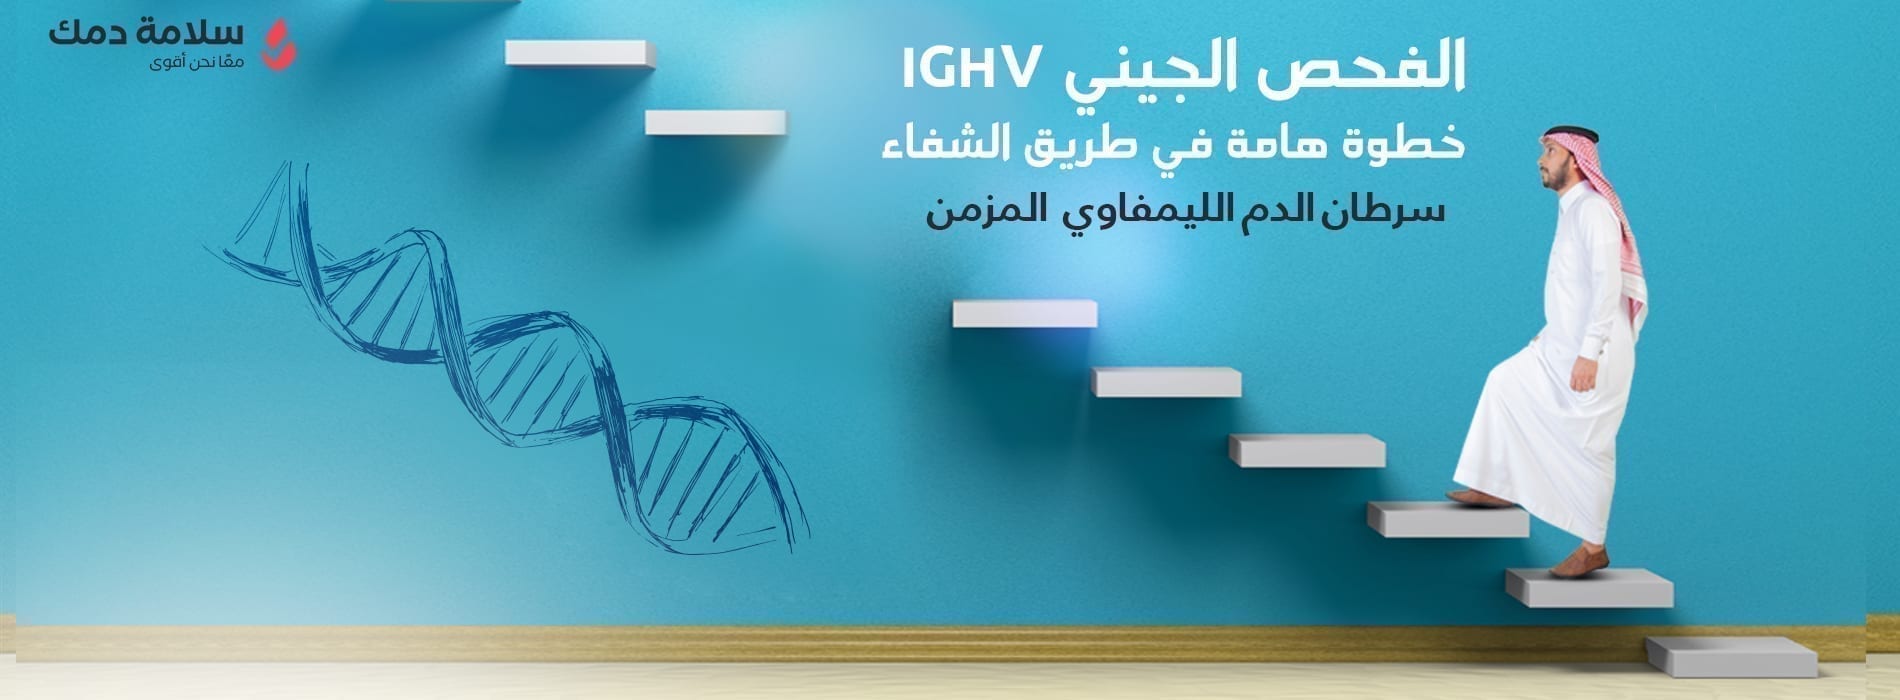 الفحص الجيني IGHV